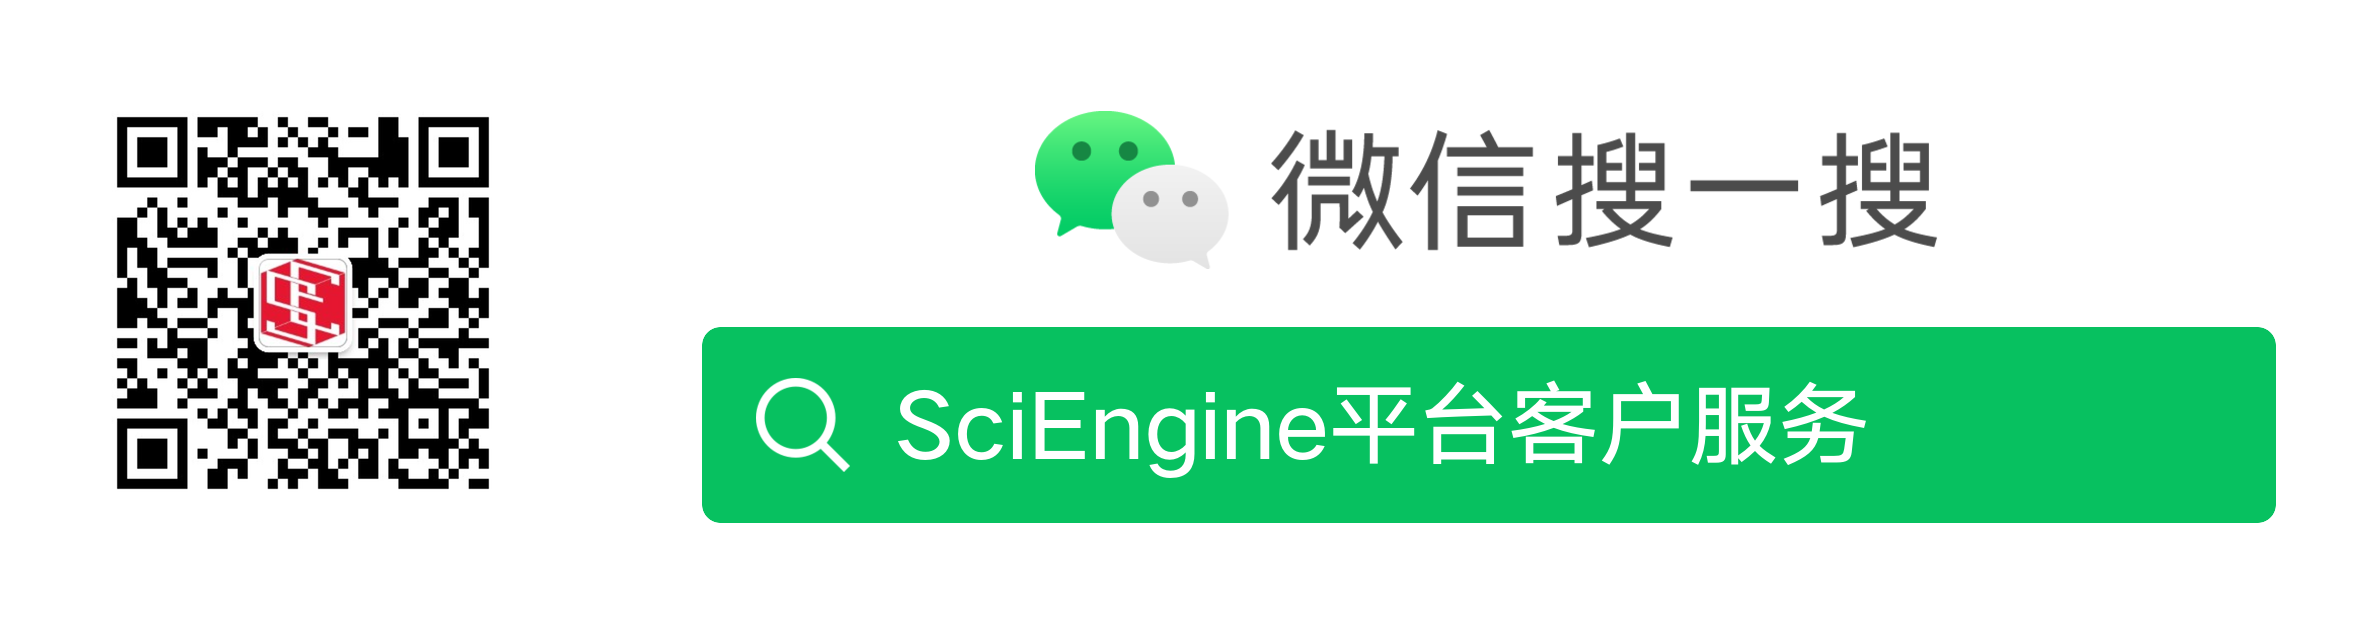 微信搜索SciEngine平台客户服务